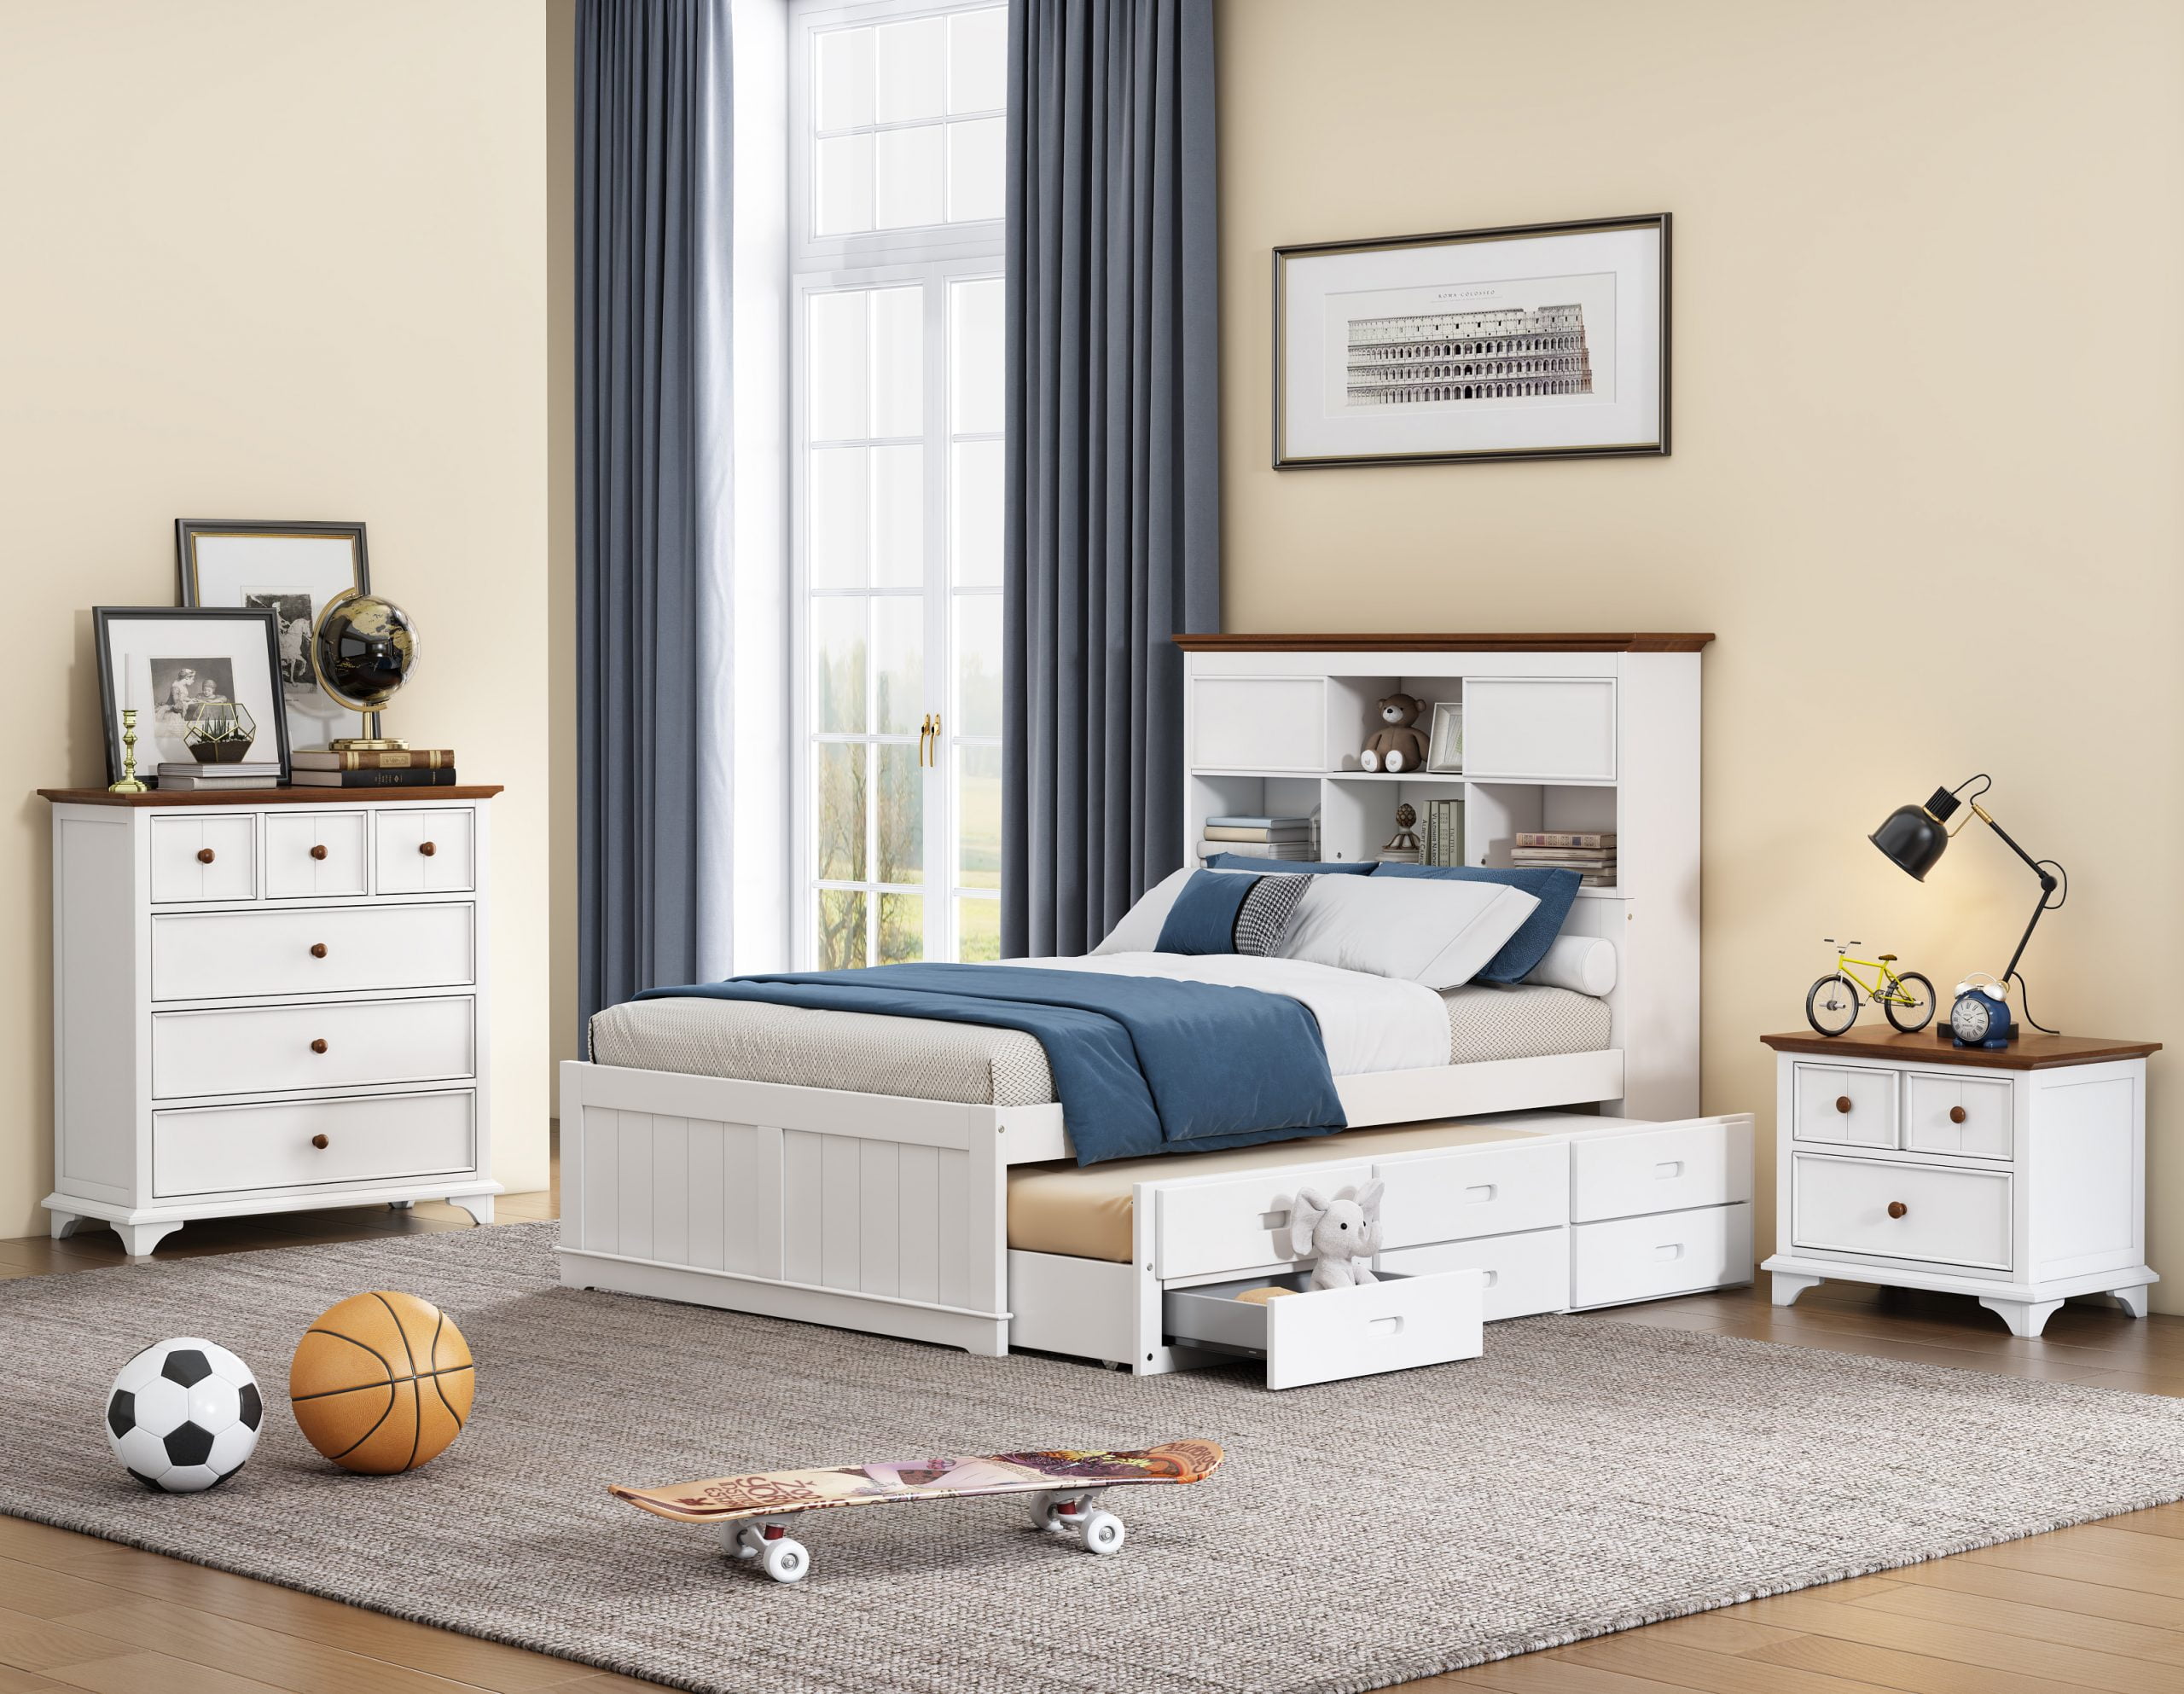 3 Pieces Wooden Captain Bedroom Set, Full Bed, Nightstand And Dresser - BS315271AAK